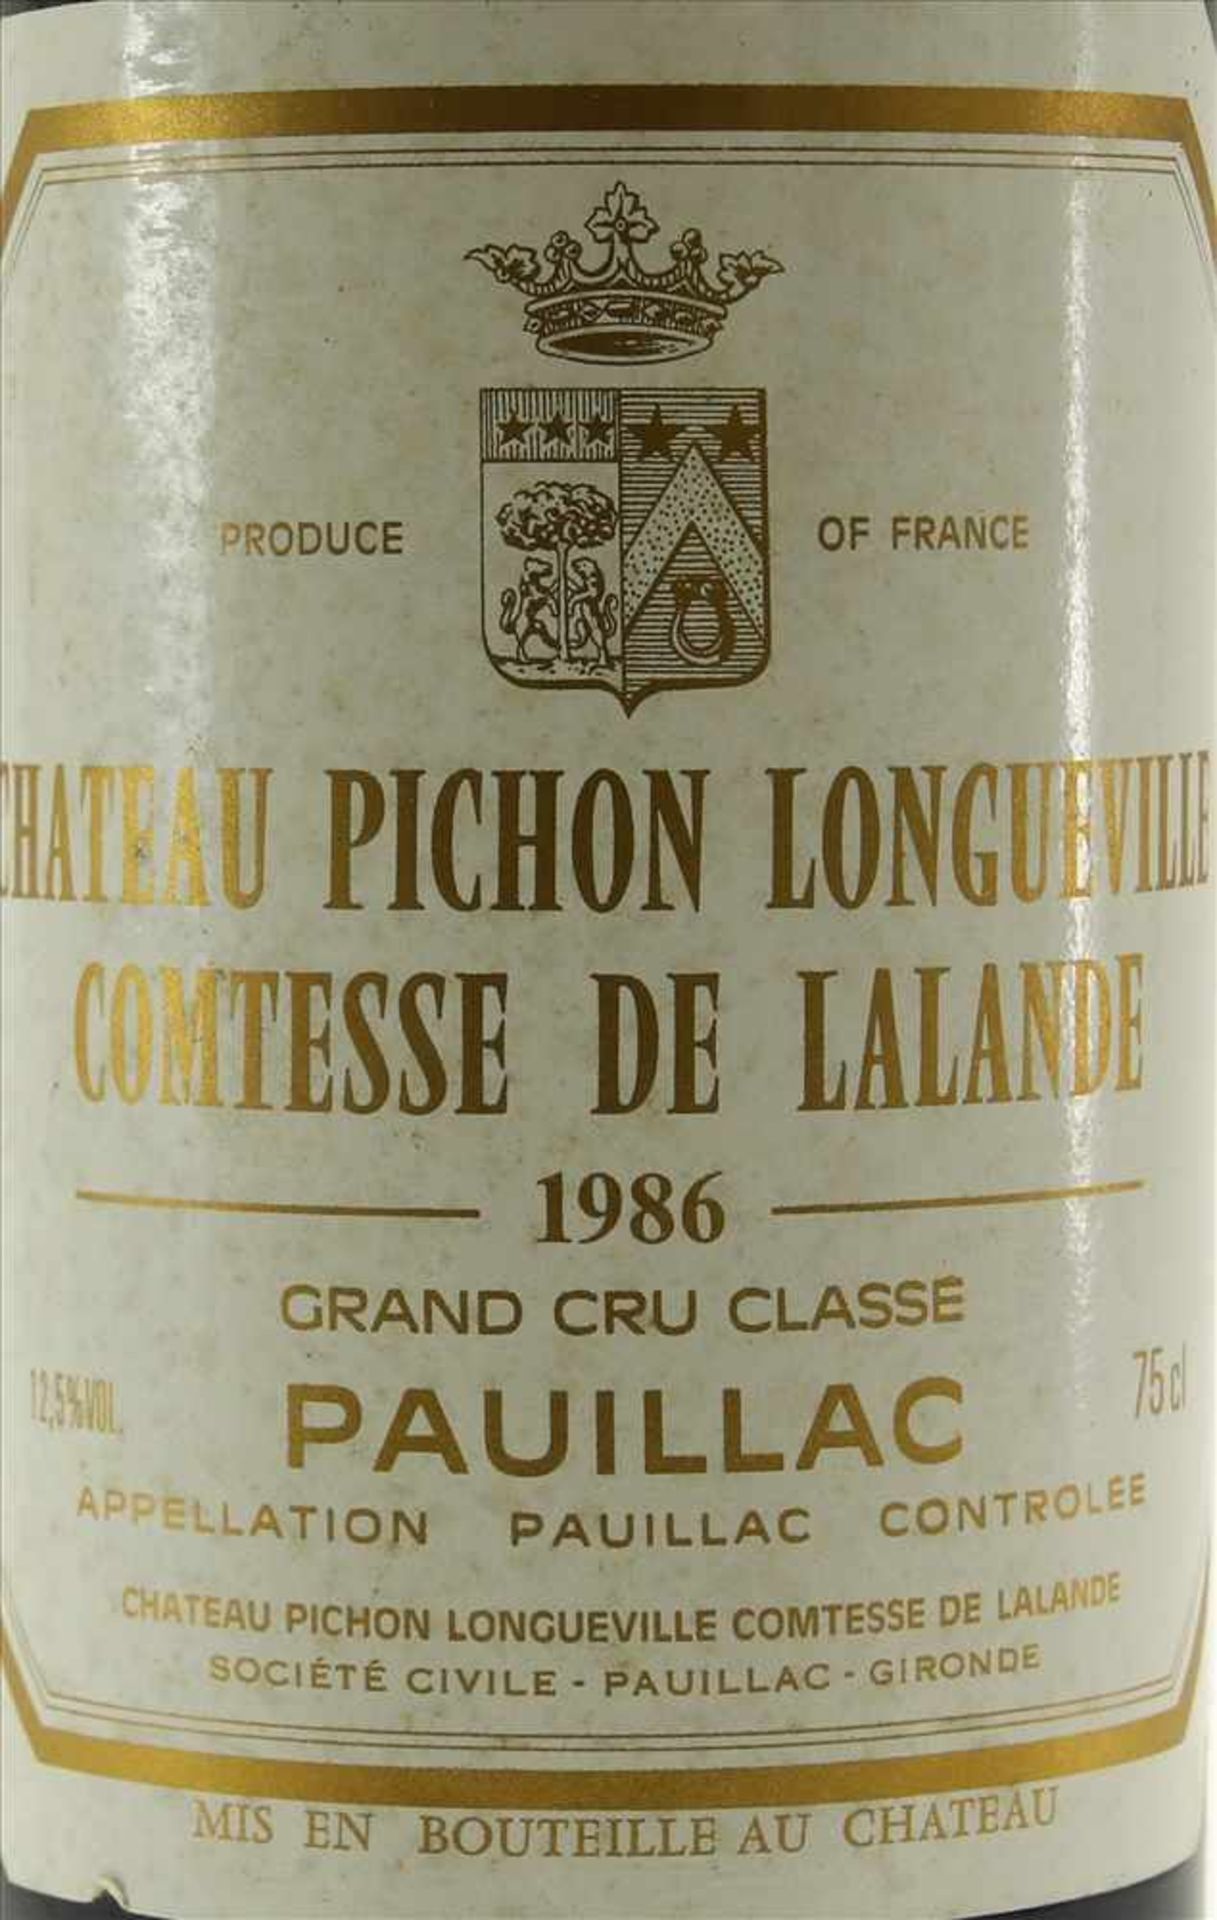 Chateau Pichon Longueville 1986Comtesse de Lalande 1986. Grand Cru Classé. 0,75 Liter Flasche. - Bild 2 aus 3